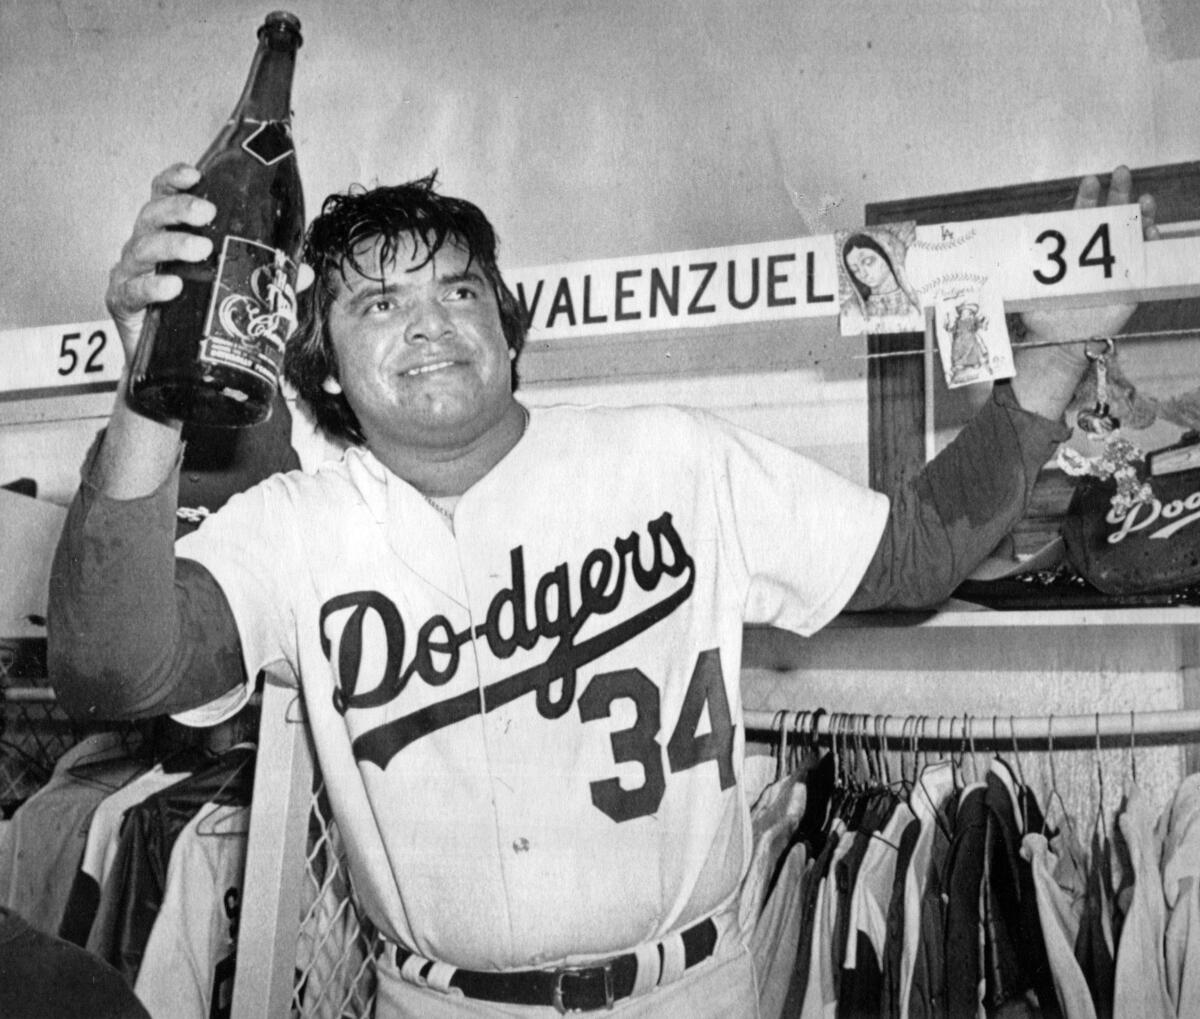 Fernando Valenzuela Los Angeles Dodgers Jersey 1981 World Series